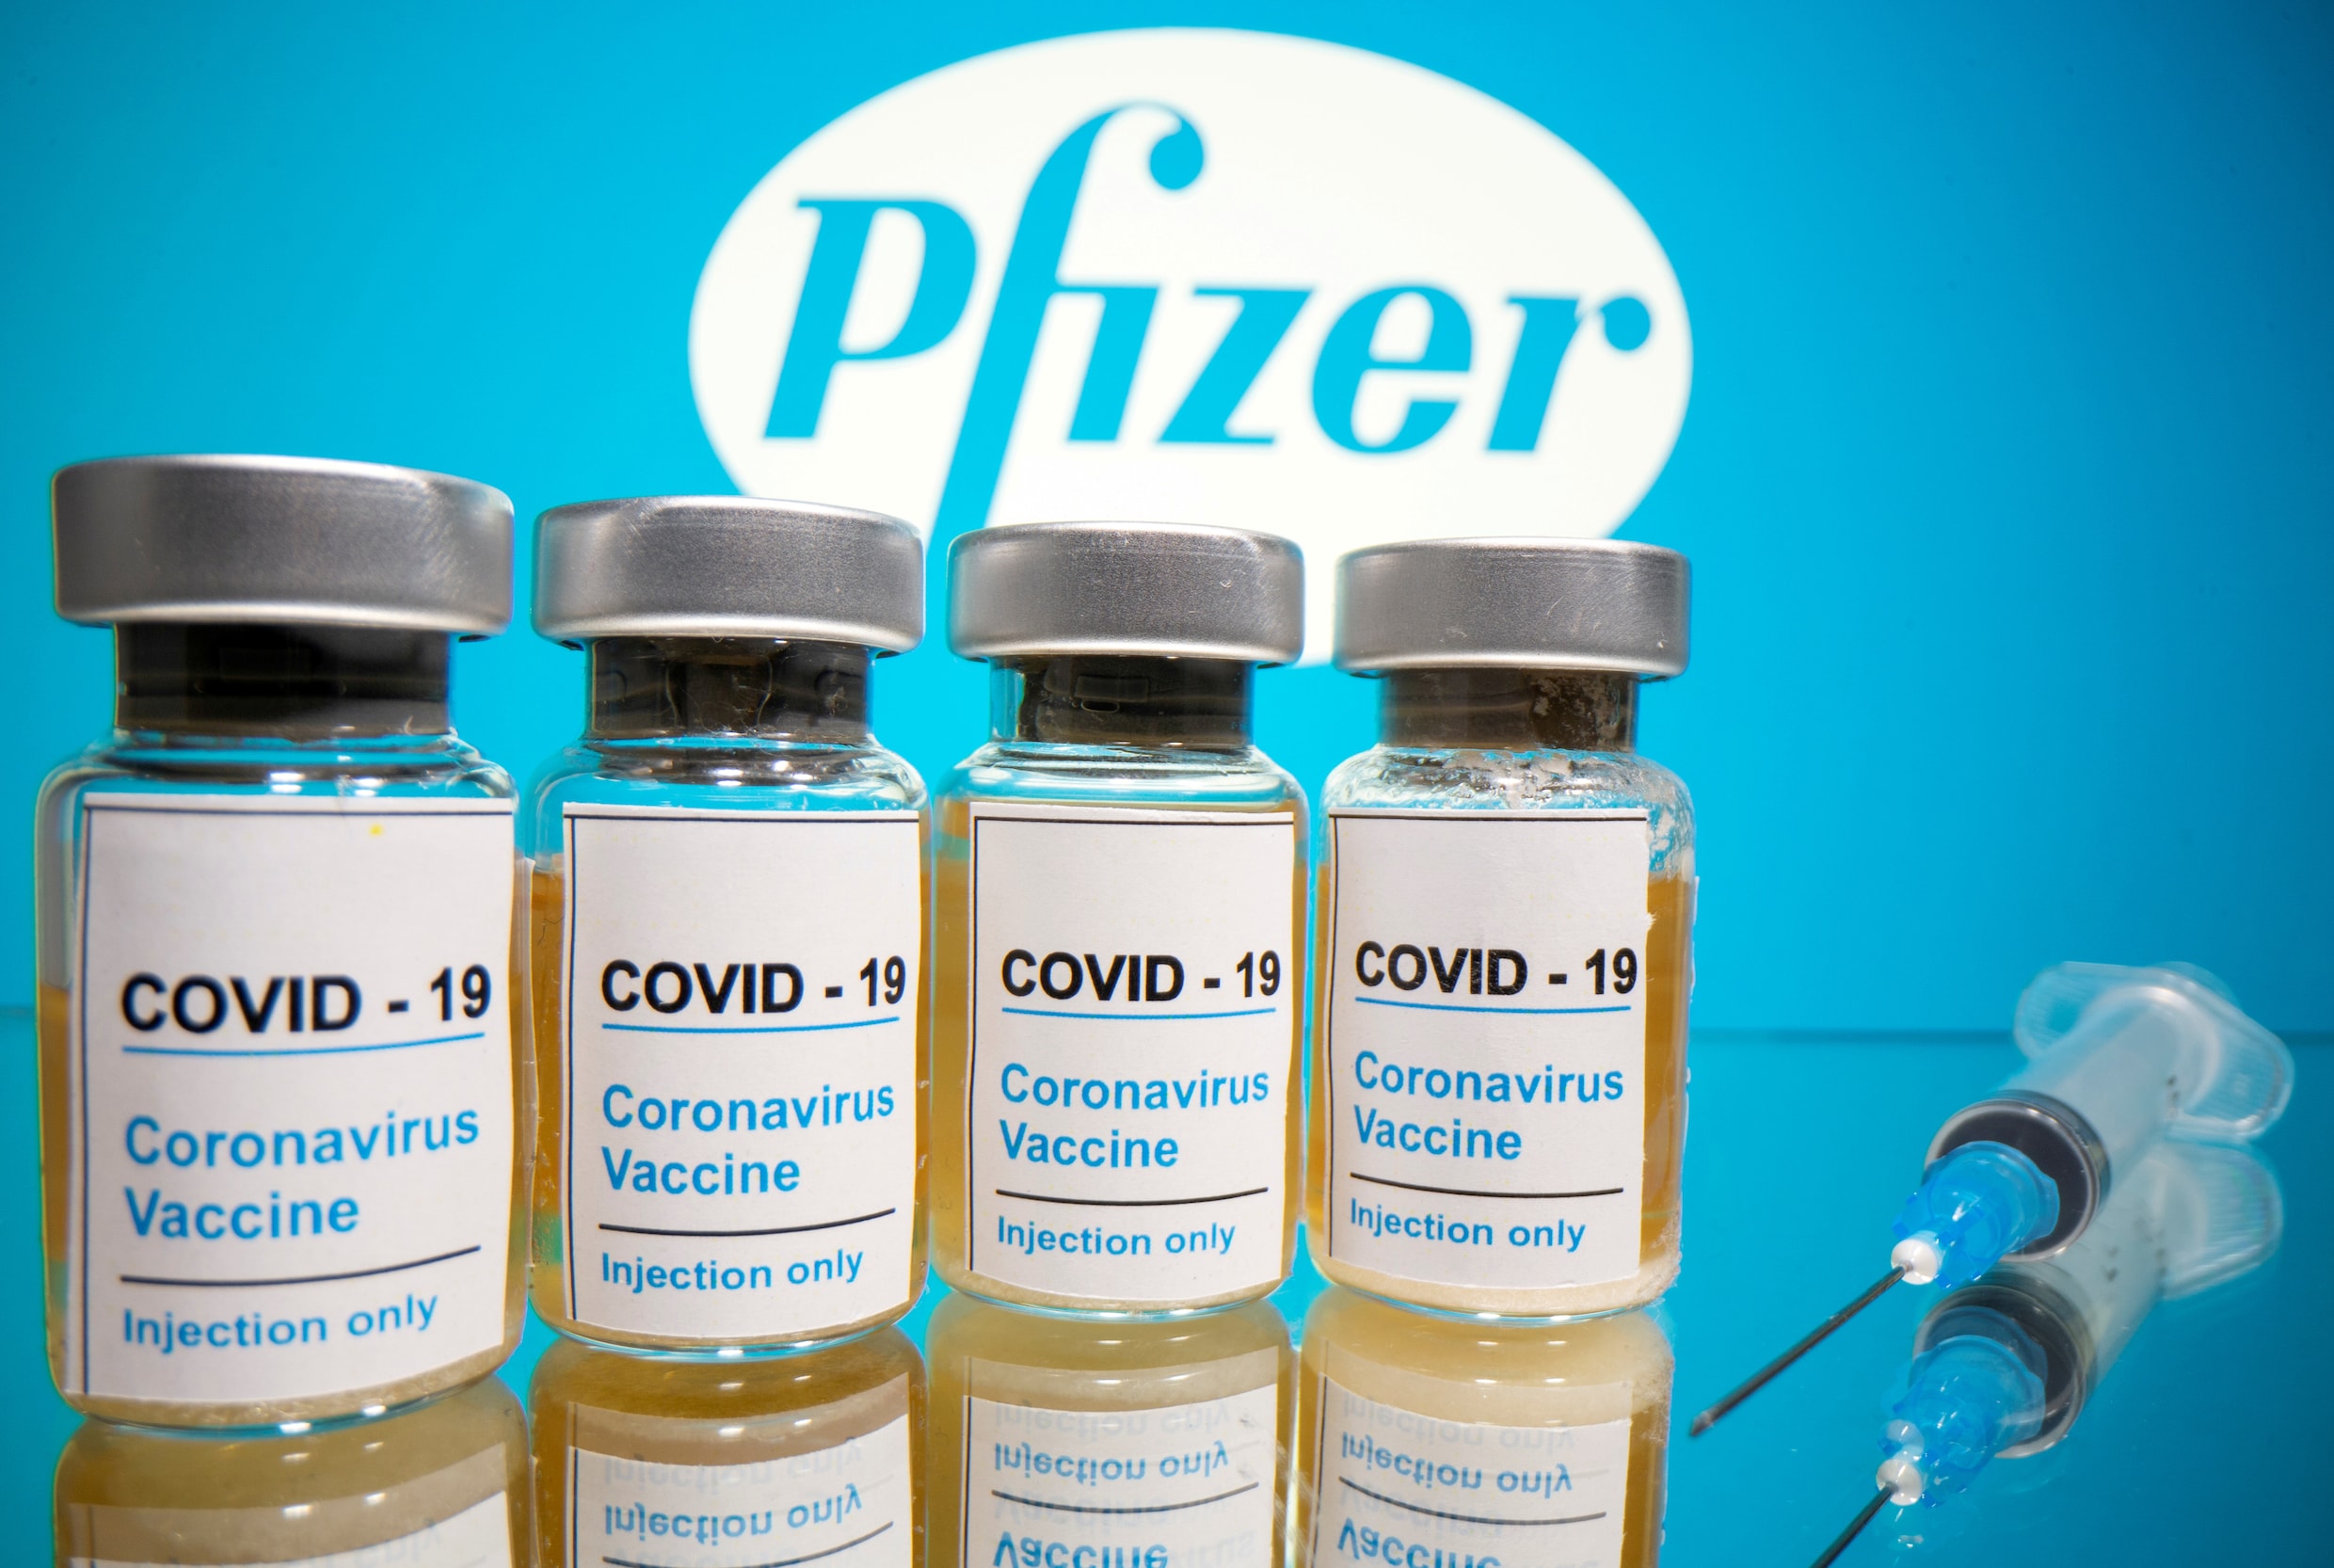 Volgende week wellicht beslissing over aankoop vaccin Pfizer